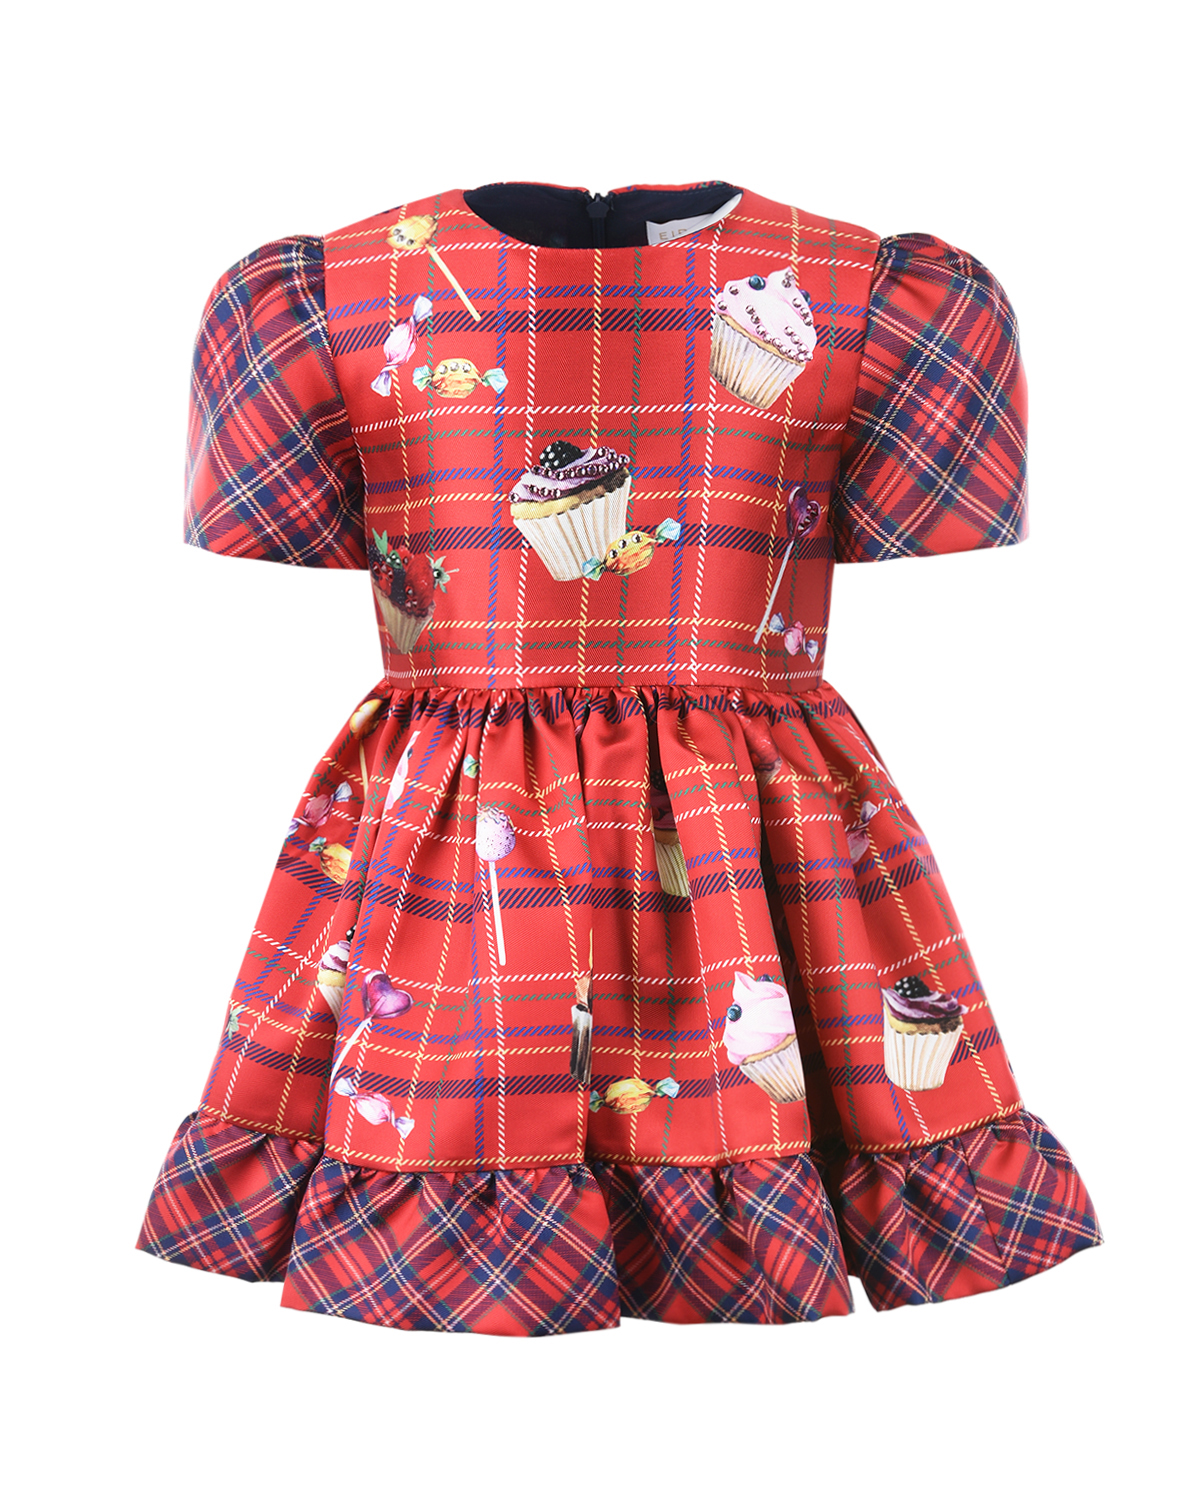 Клетчатое платье с отделкой рюшами Eirene детское, размер 86, цвет красный - фото 1